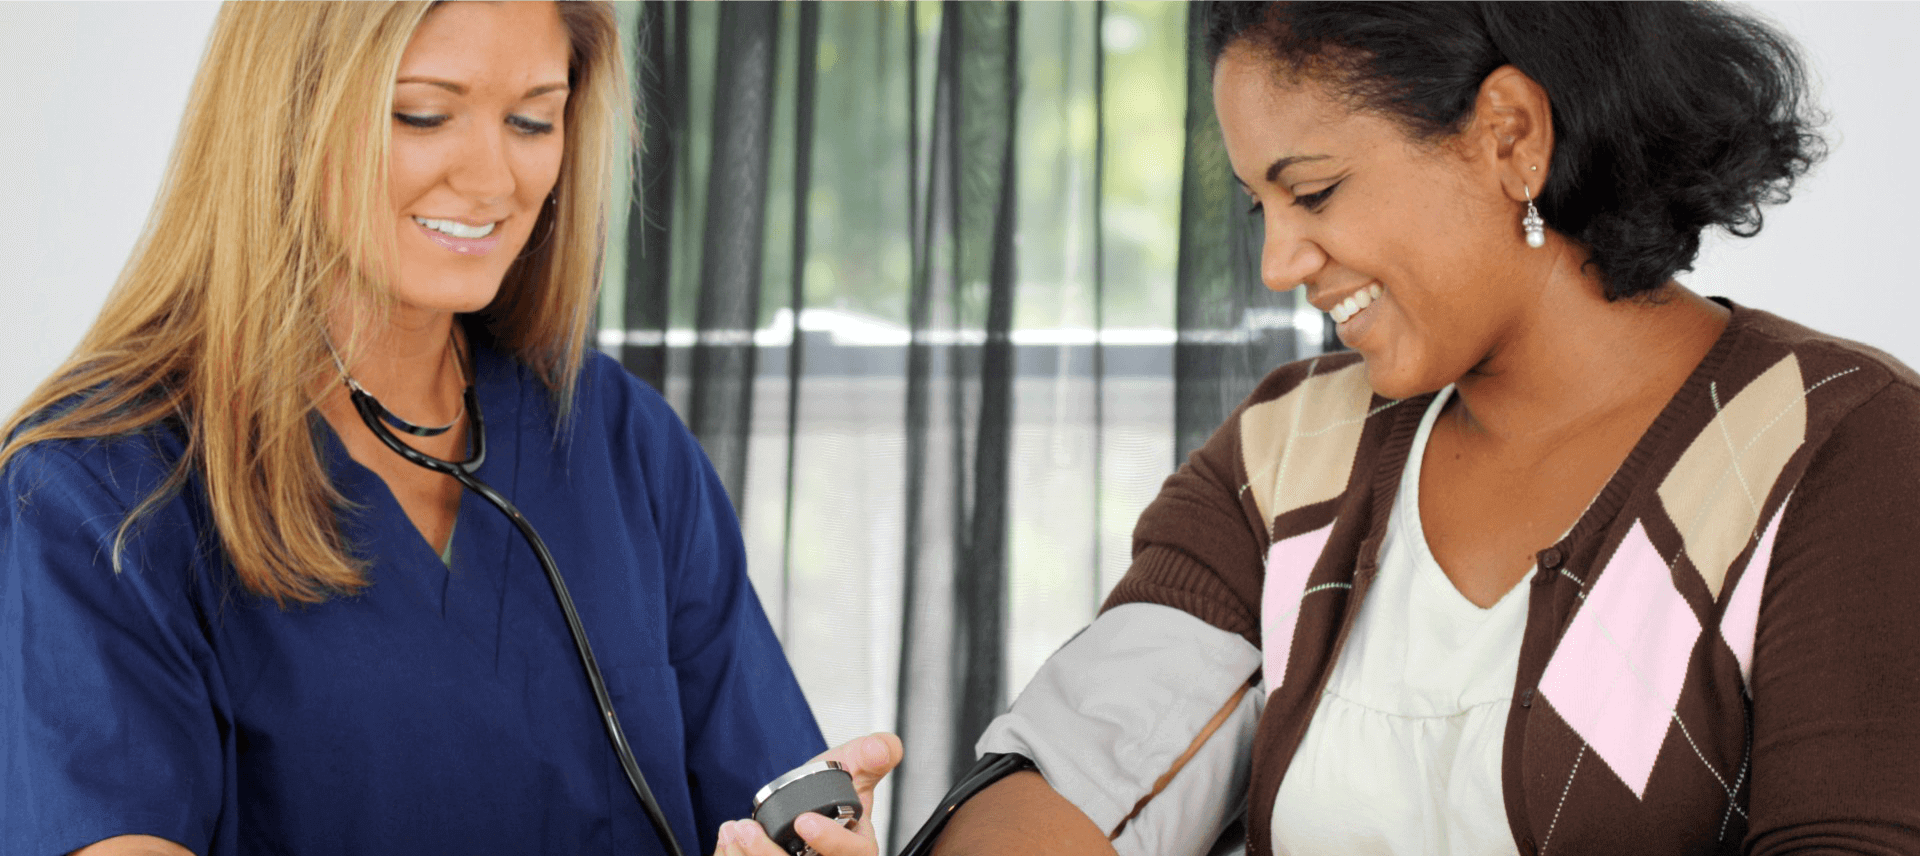 nurse checking patient's blood pressure